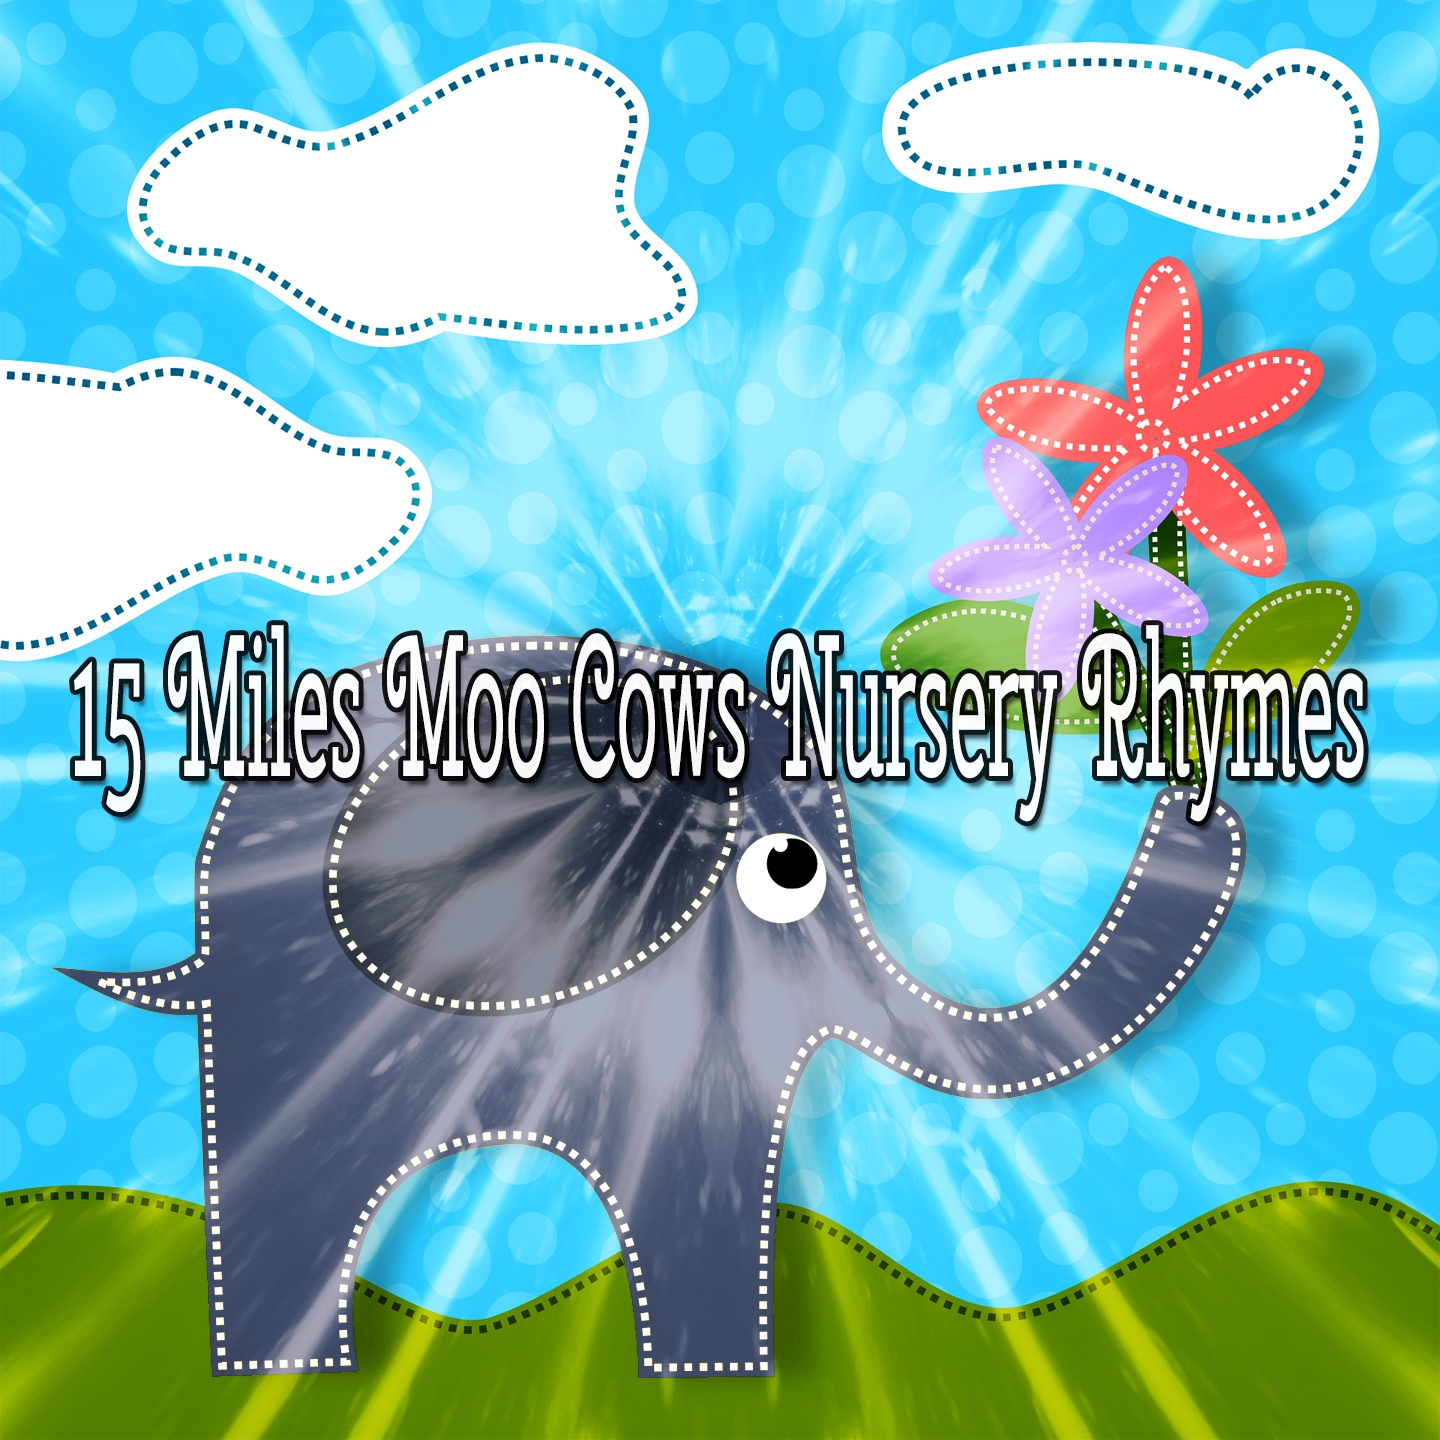 15 Miles Moo Cows Nursery Rhymes